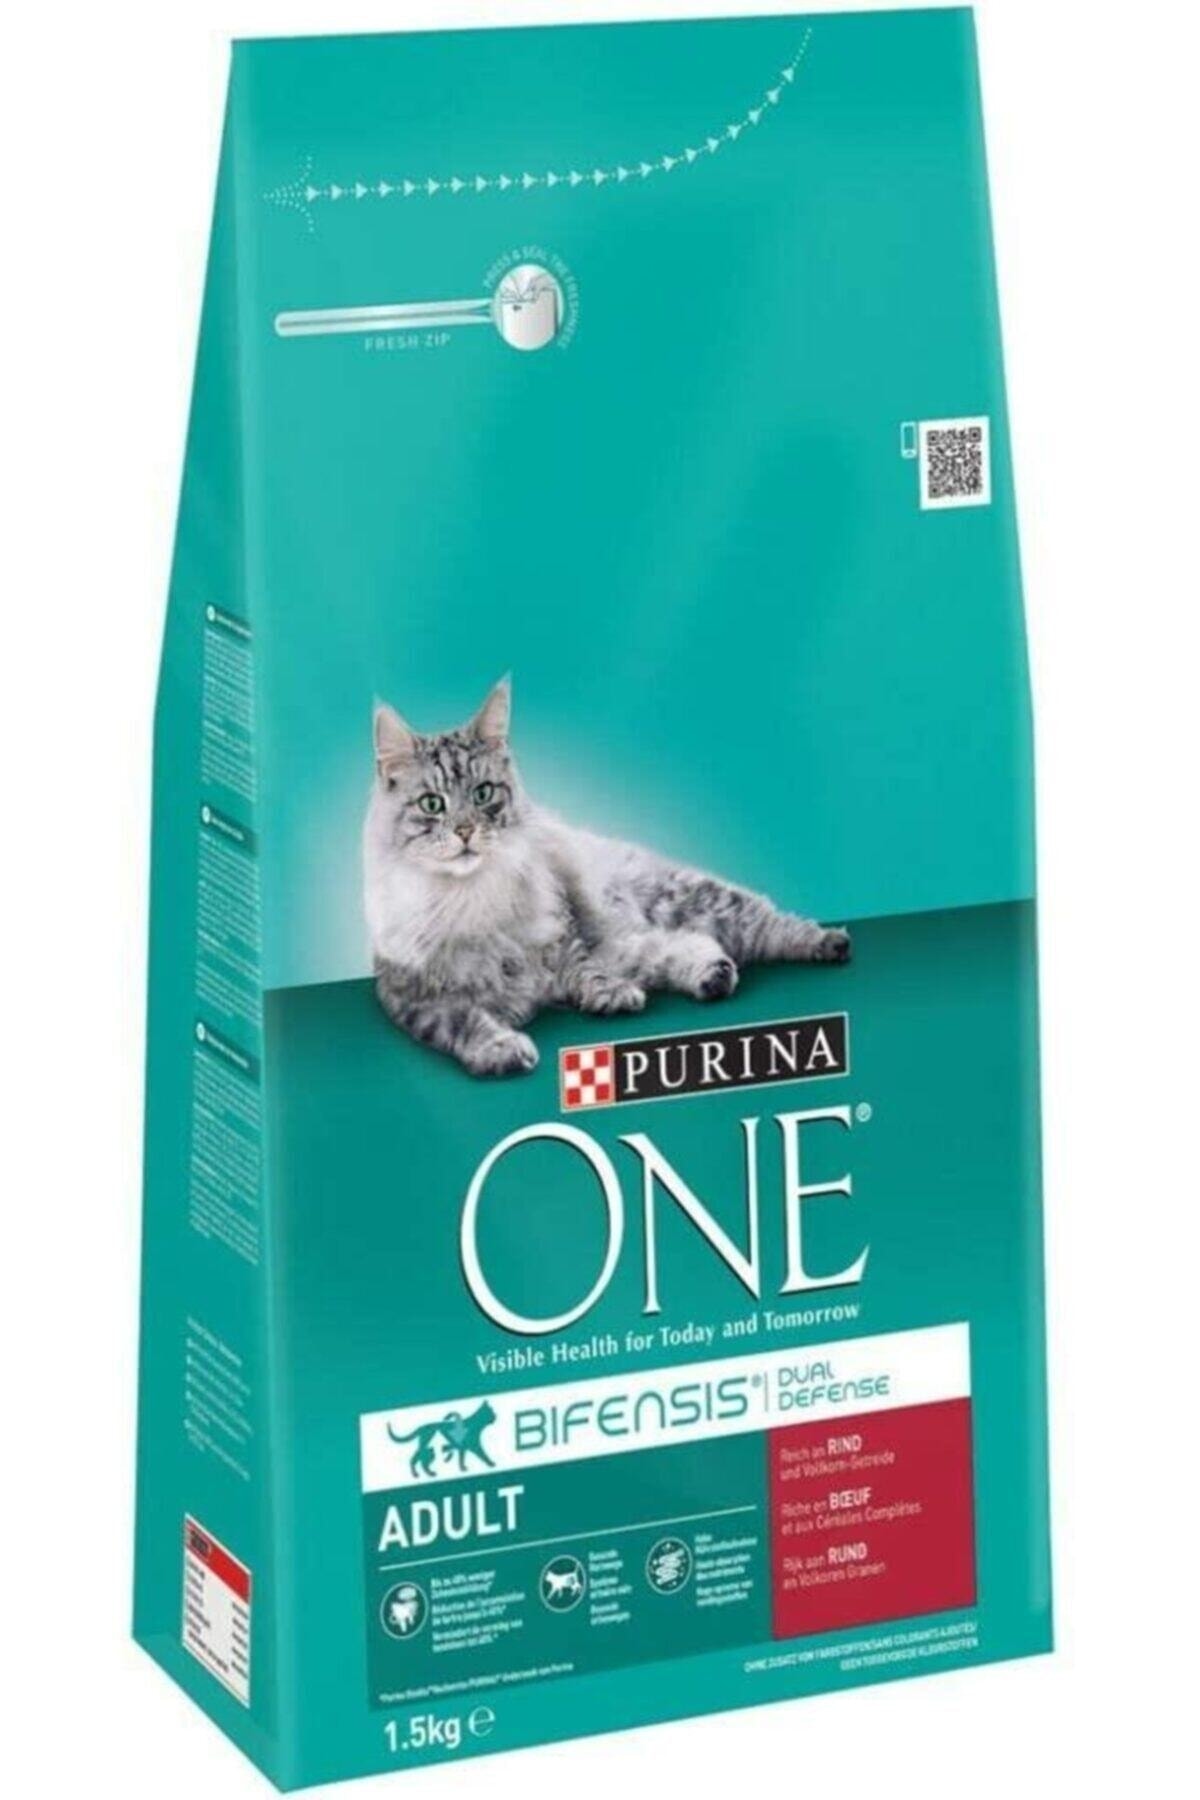 Purina One One Bifensis Yetişkin Kediler Için Sığır Etli Tam Kuru Kedi Maması 1.5kg